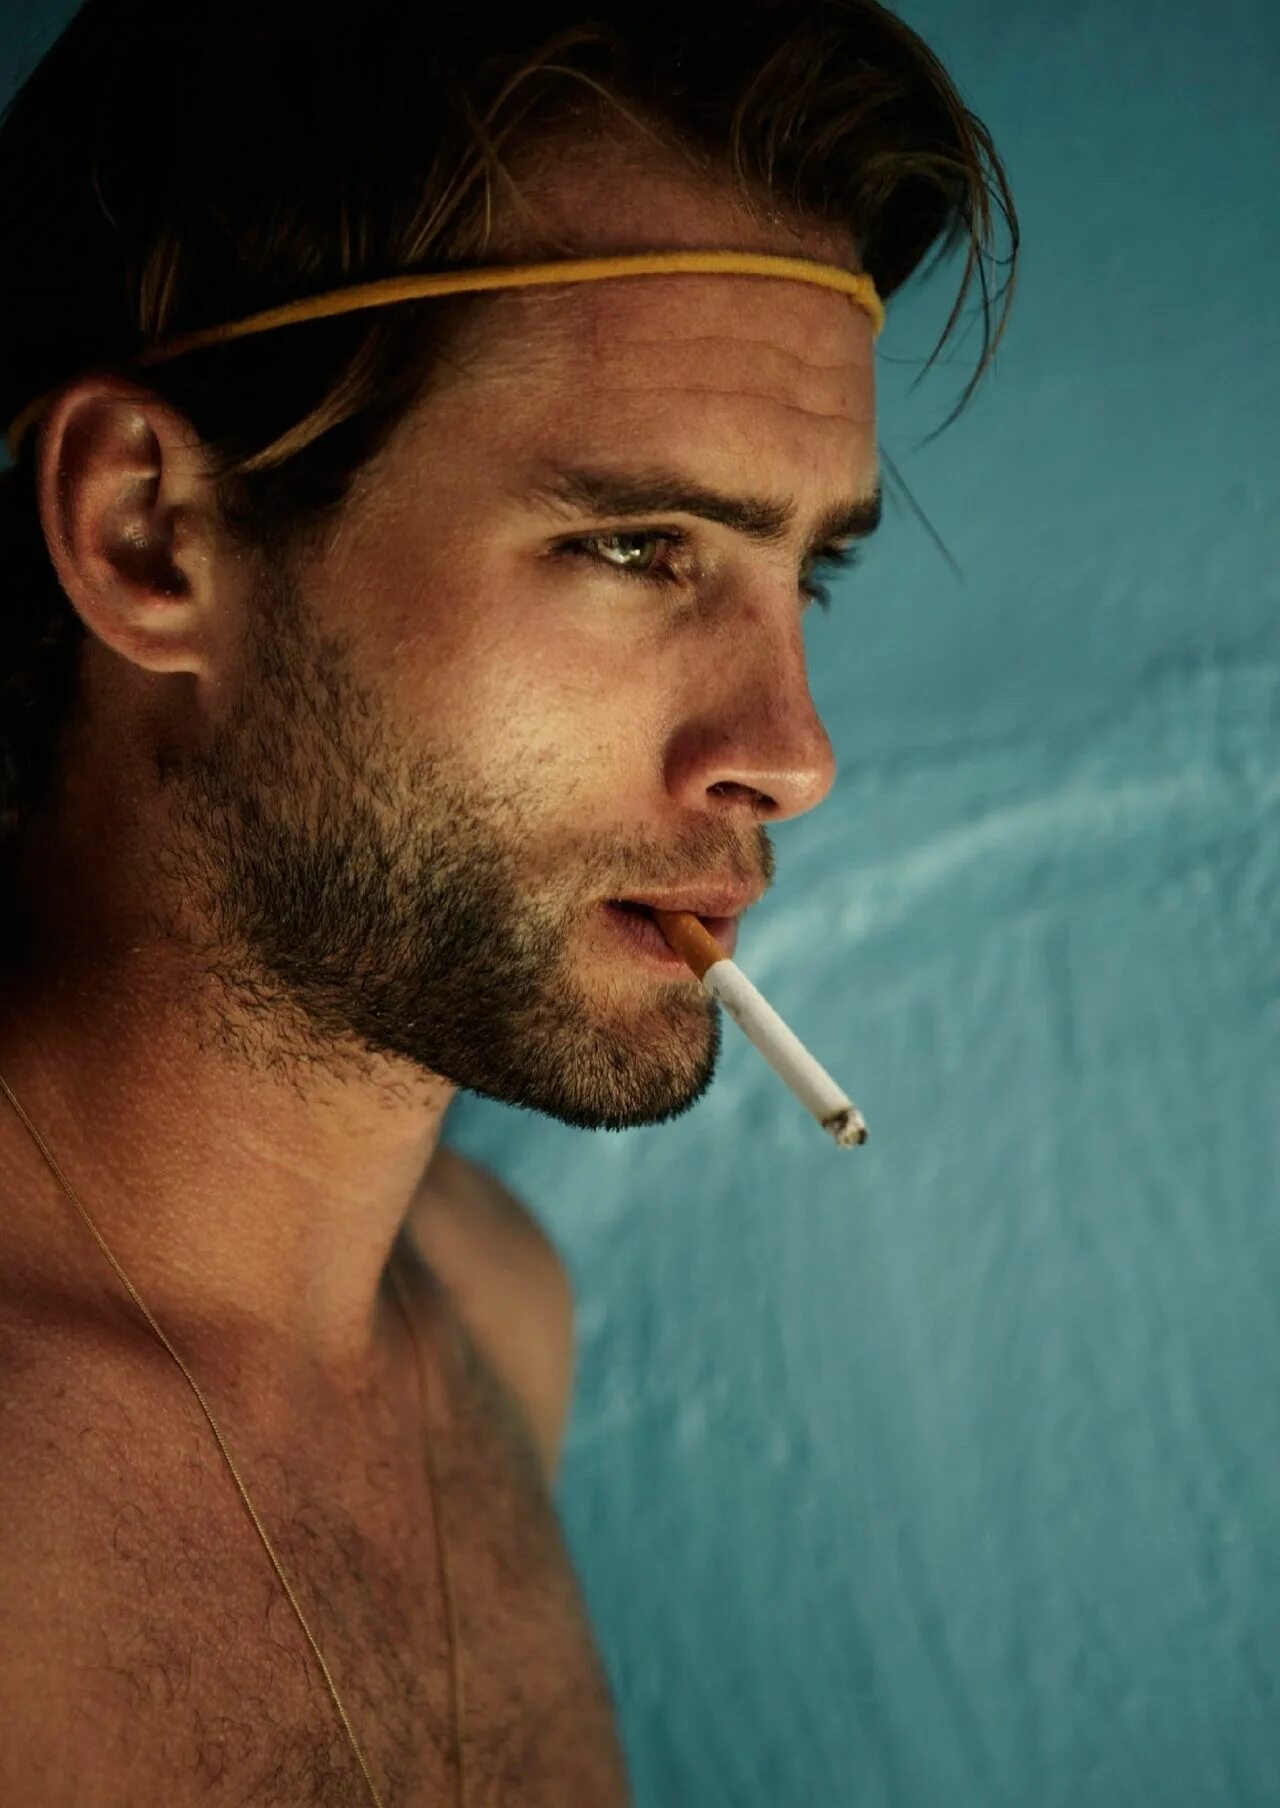 Курить можно мужчинам. Красивый мужчина курит. Красивое курение мужчин. Брутальный мужчина с сигаретой. Мужчина модель курит.